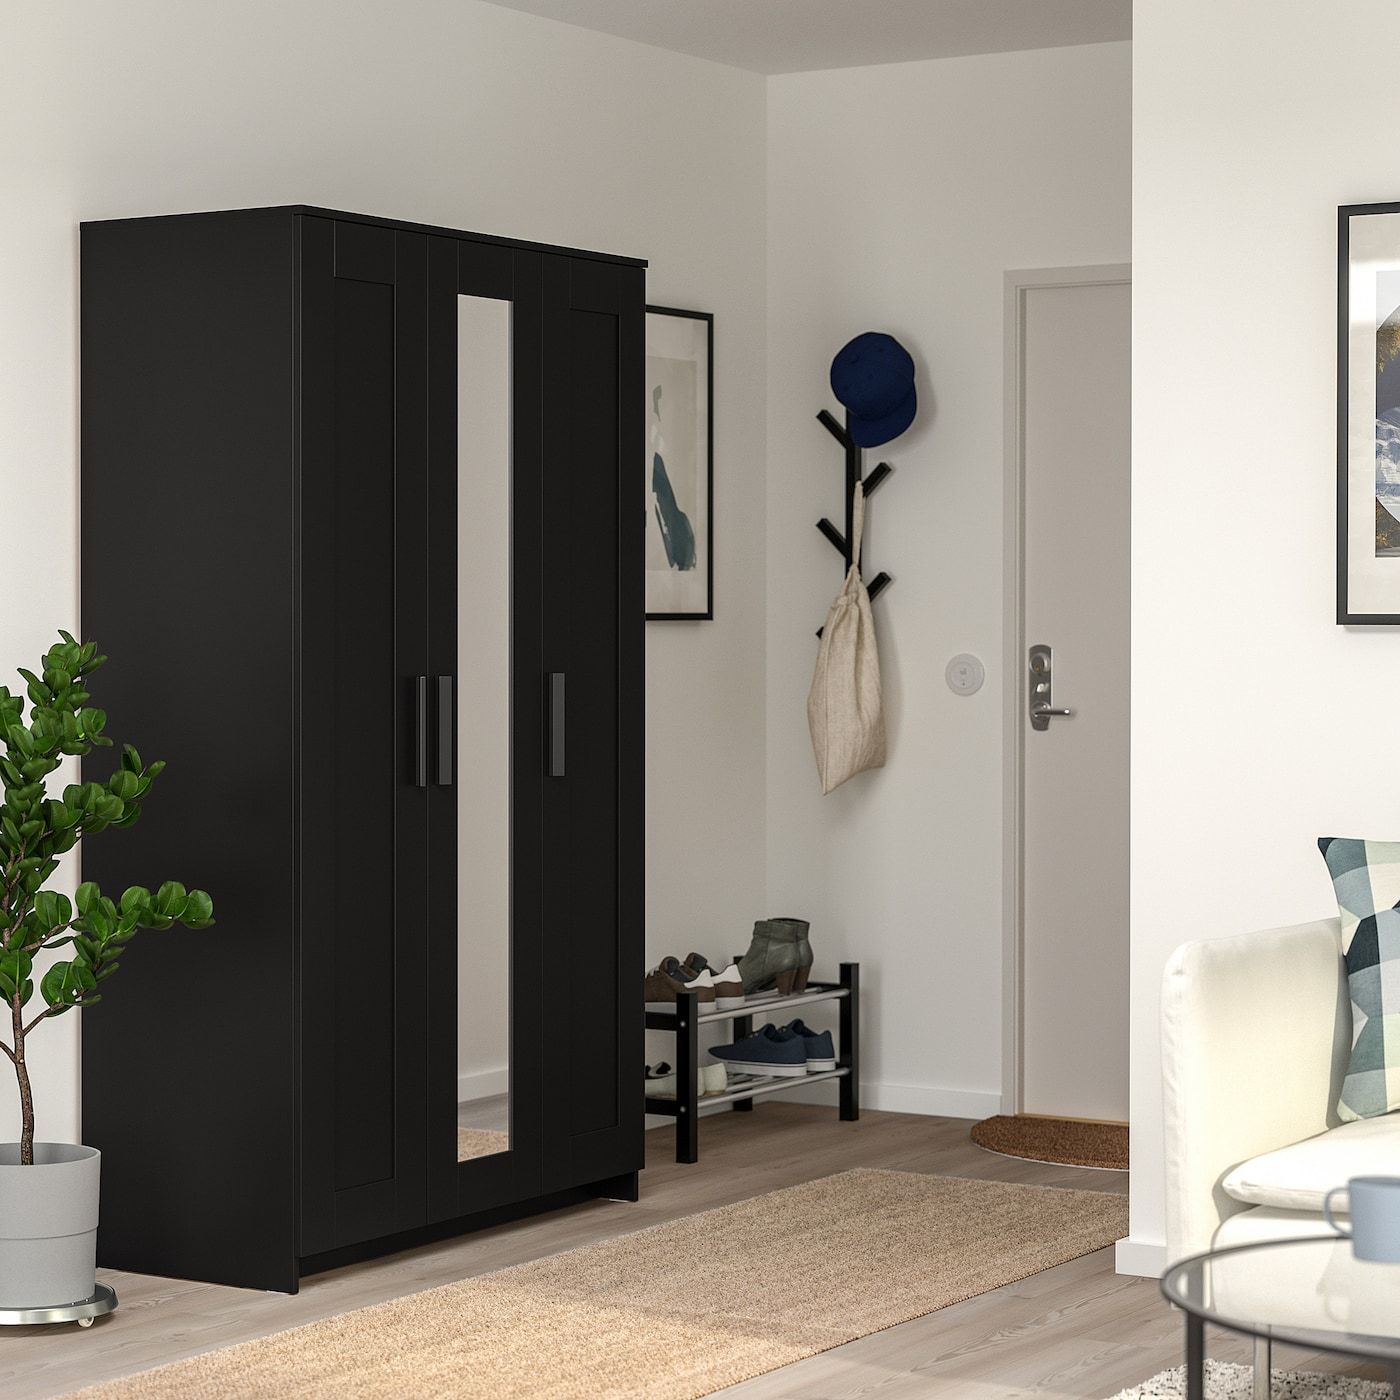 Brimnes Wardrobe With 3 Doors, Black, 46x743/4" – Ikea Throughout 3 Door Black Wardrobes (Photo 2 of 15)